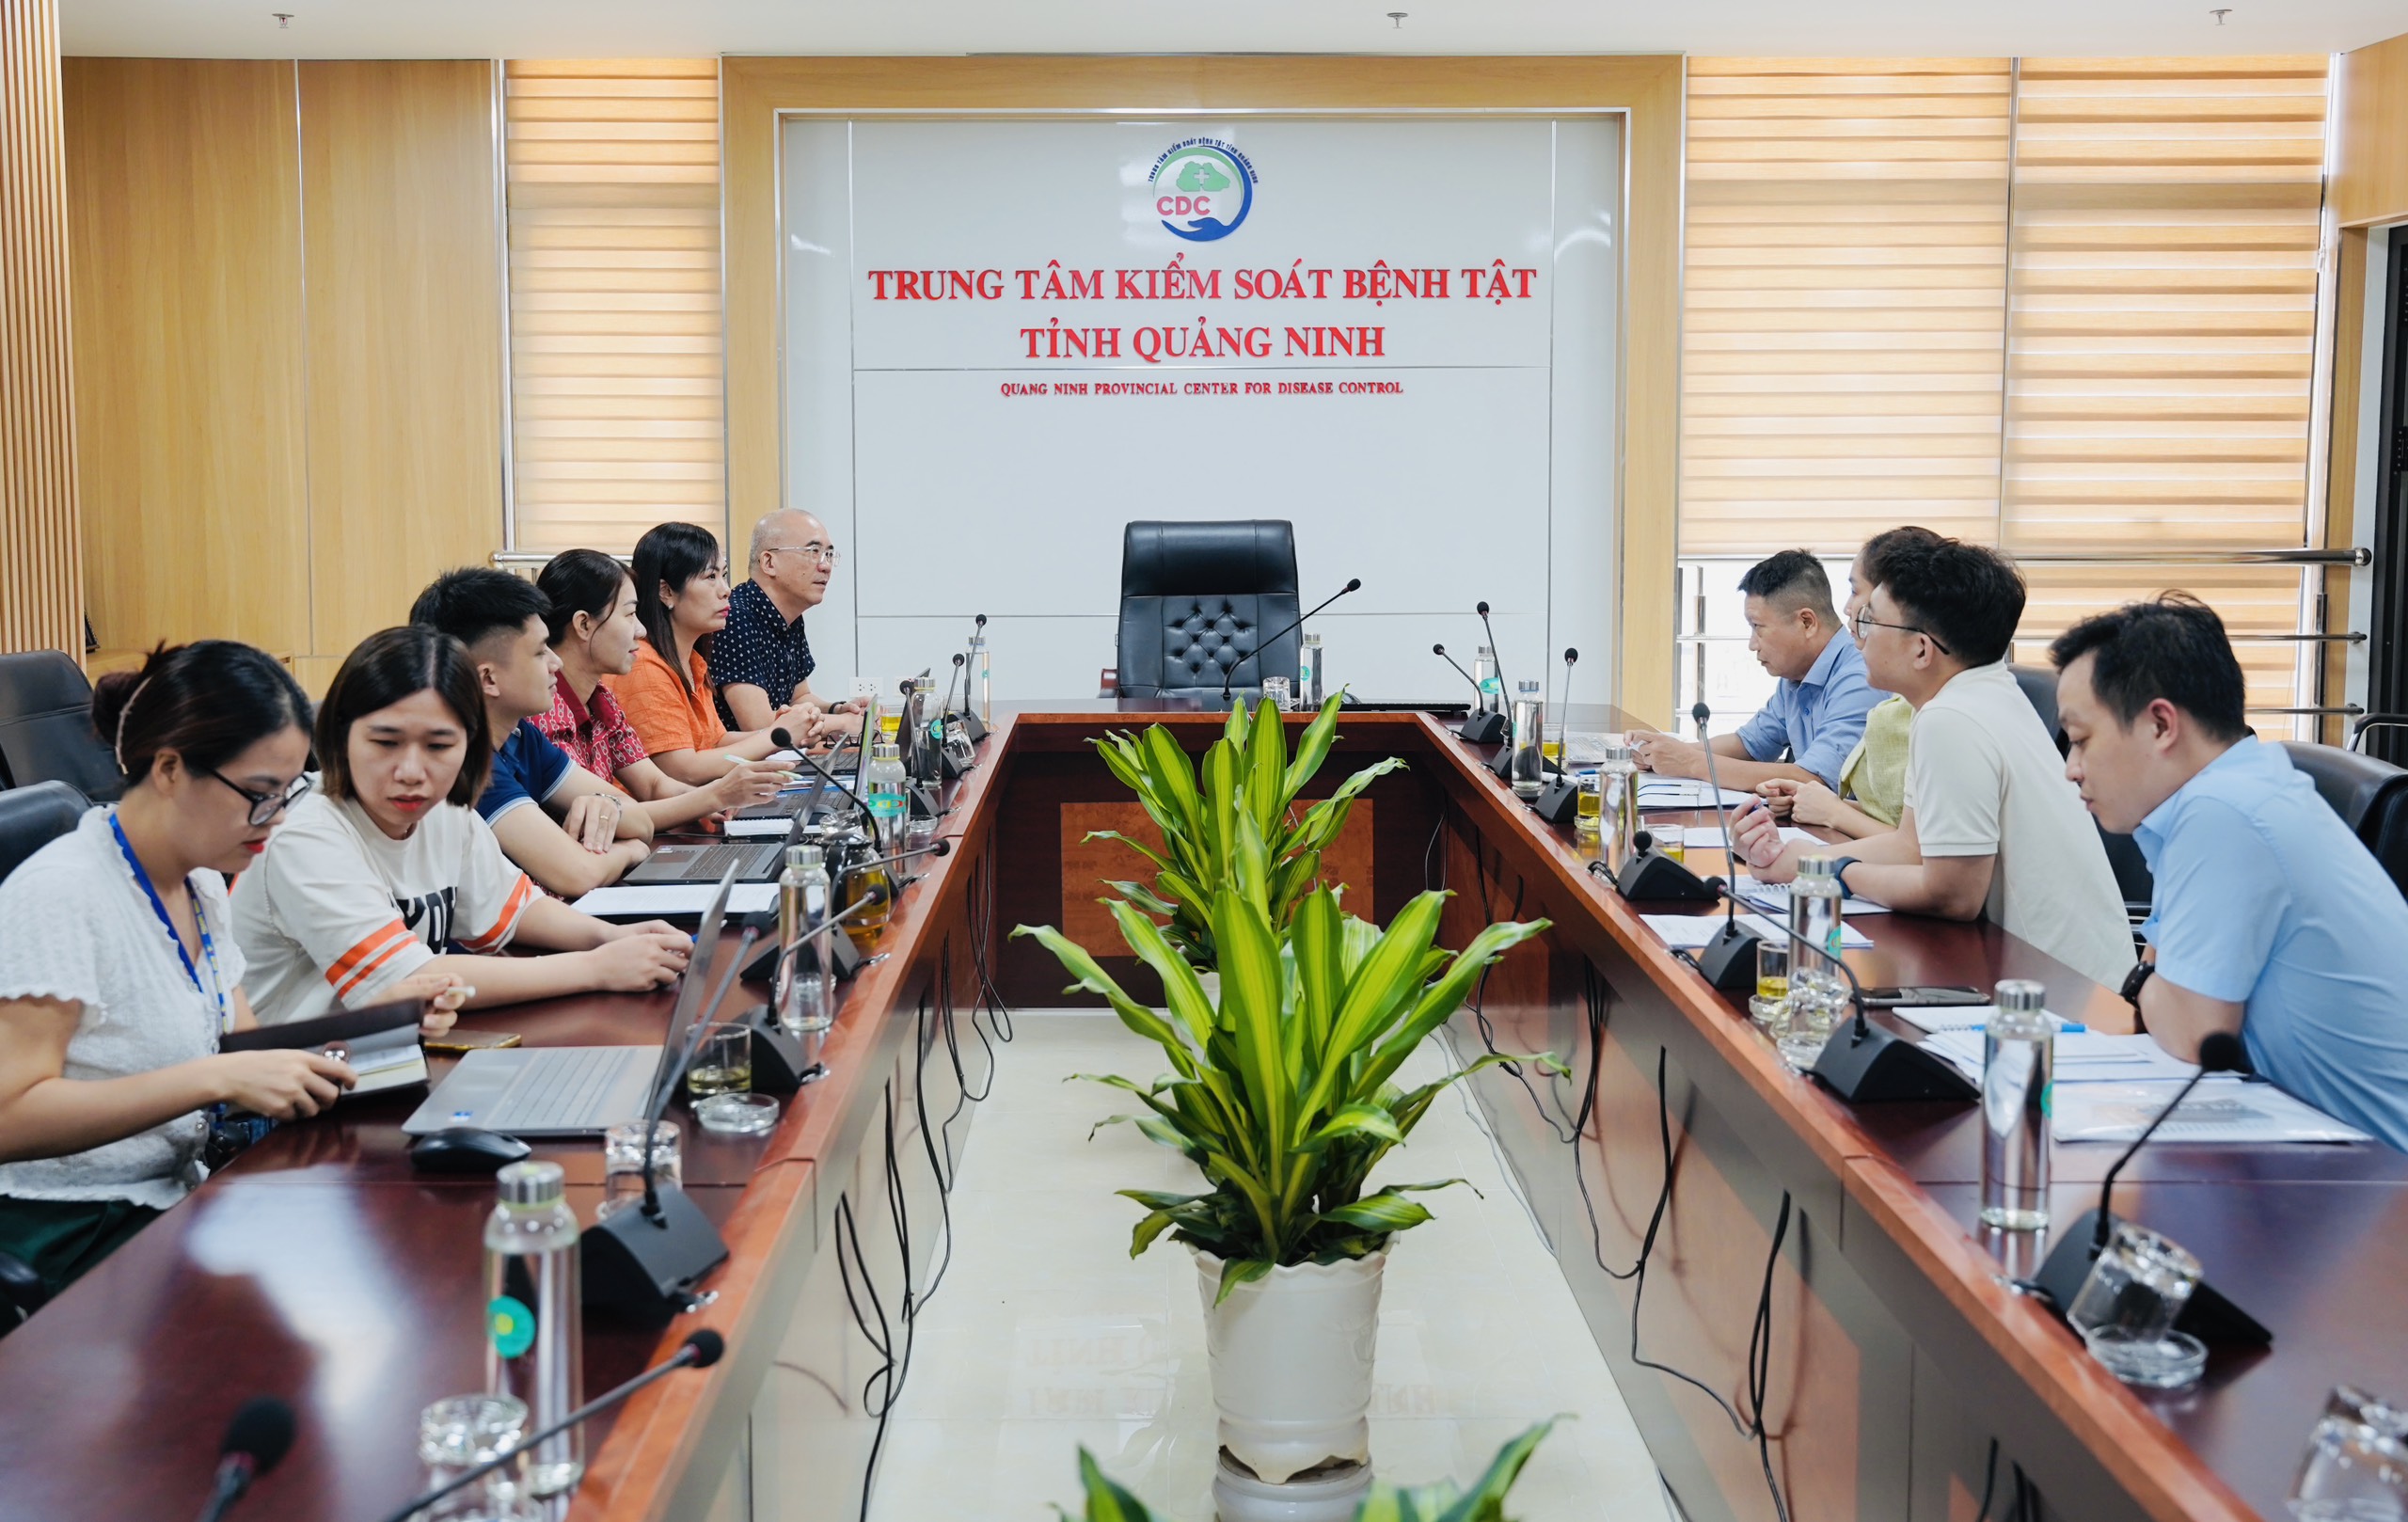 CDC Quảng Ninh tiếp đón và làm việc với Bệnh viện Nội tiết Trung ương về công tác phòng, chống bệnh Đái tháo đường trên địa bàn tỉnh